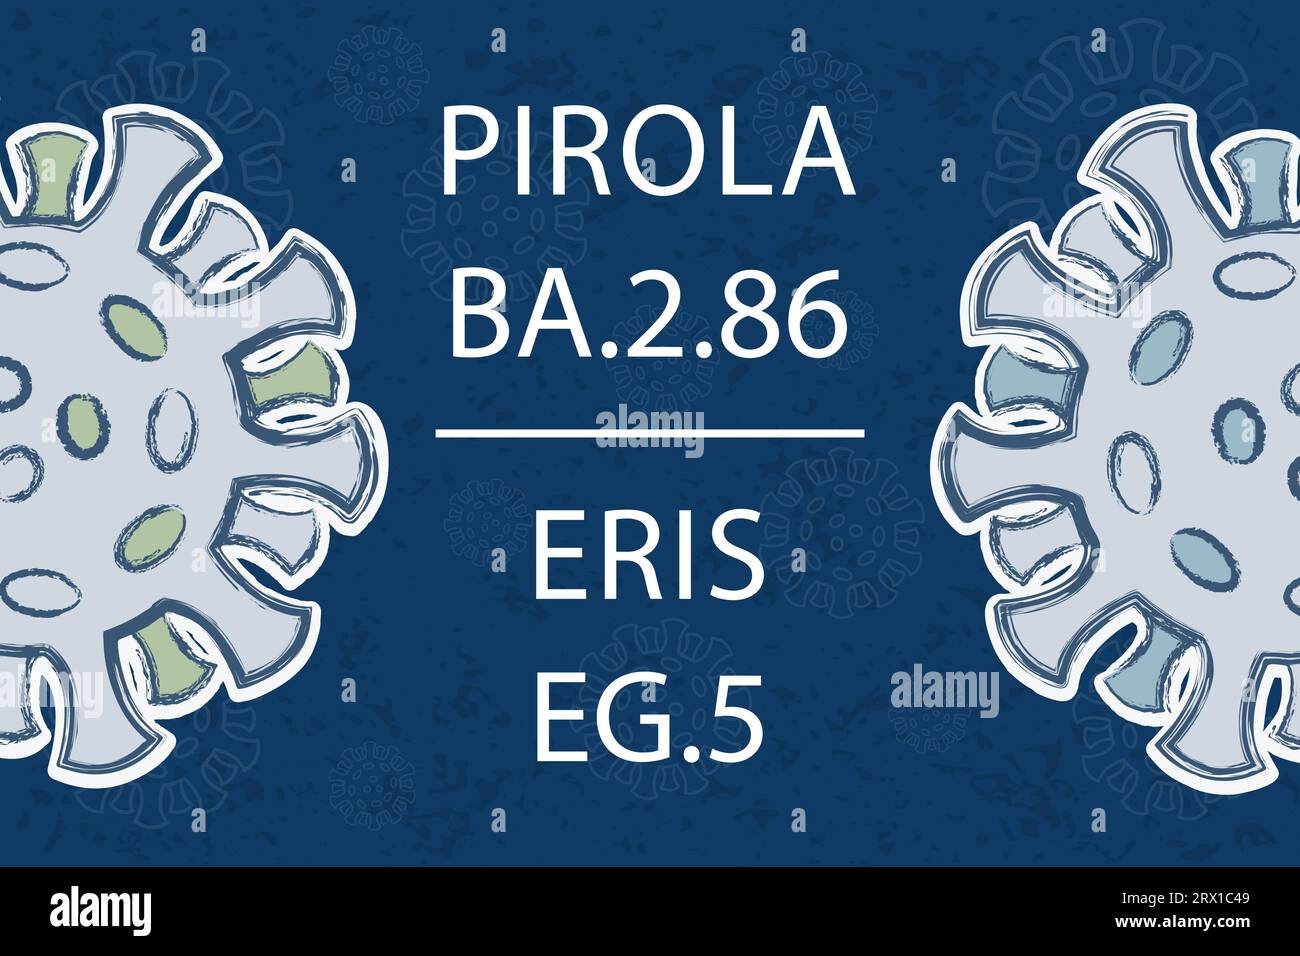 Nouvelles variantes de Omicron Pirola BA.2,86 et Eris EG.5. Texte blanc sur fond bleu foncé. Différentes couleurs des protéines de pointe Illustration de Vecteur